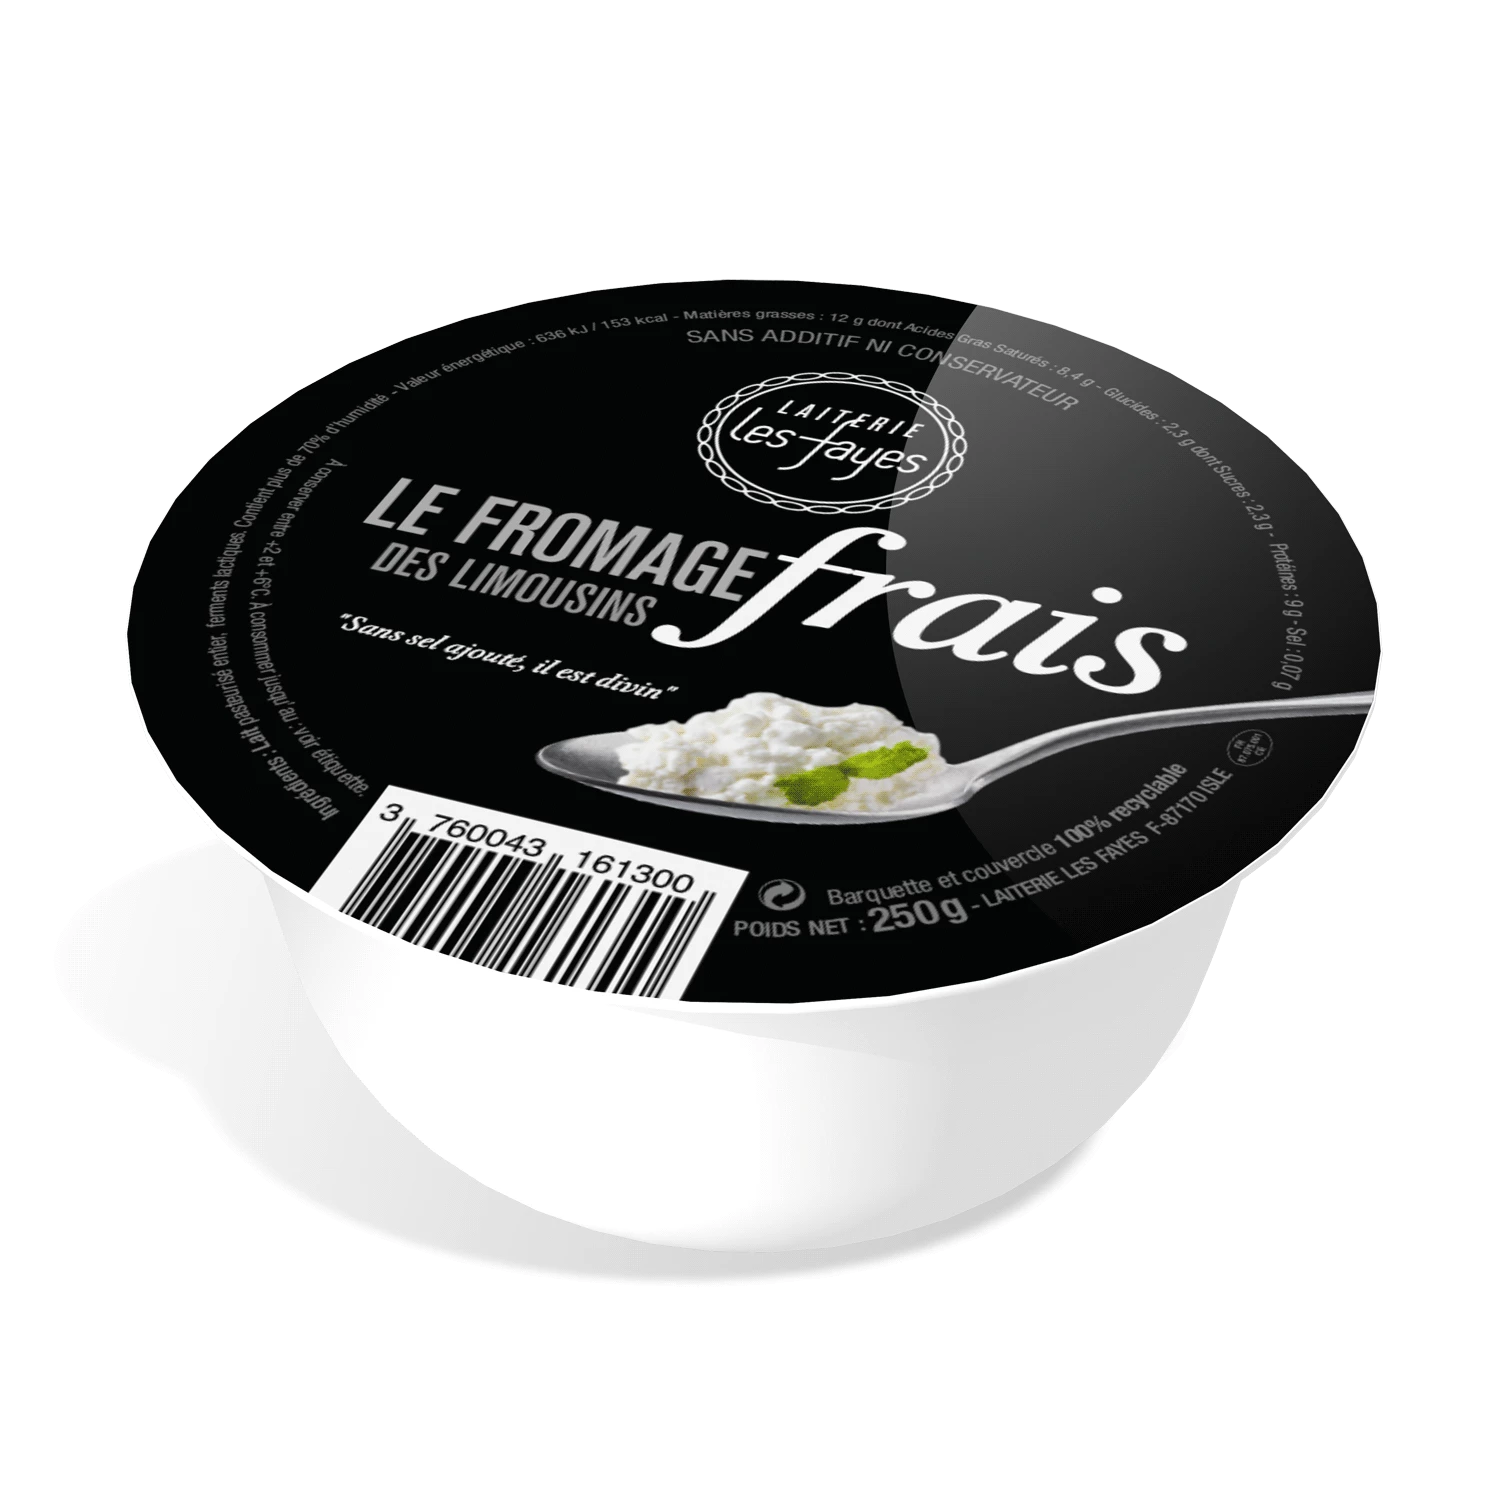 Fromage Frais Des Limousins 25